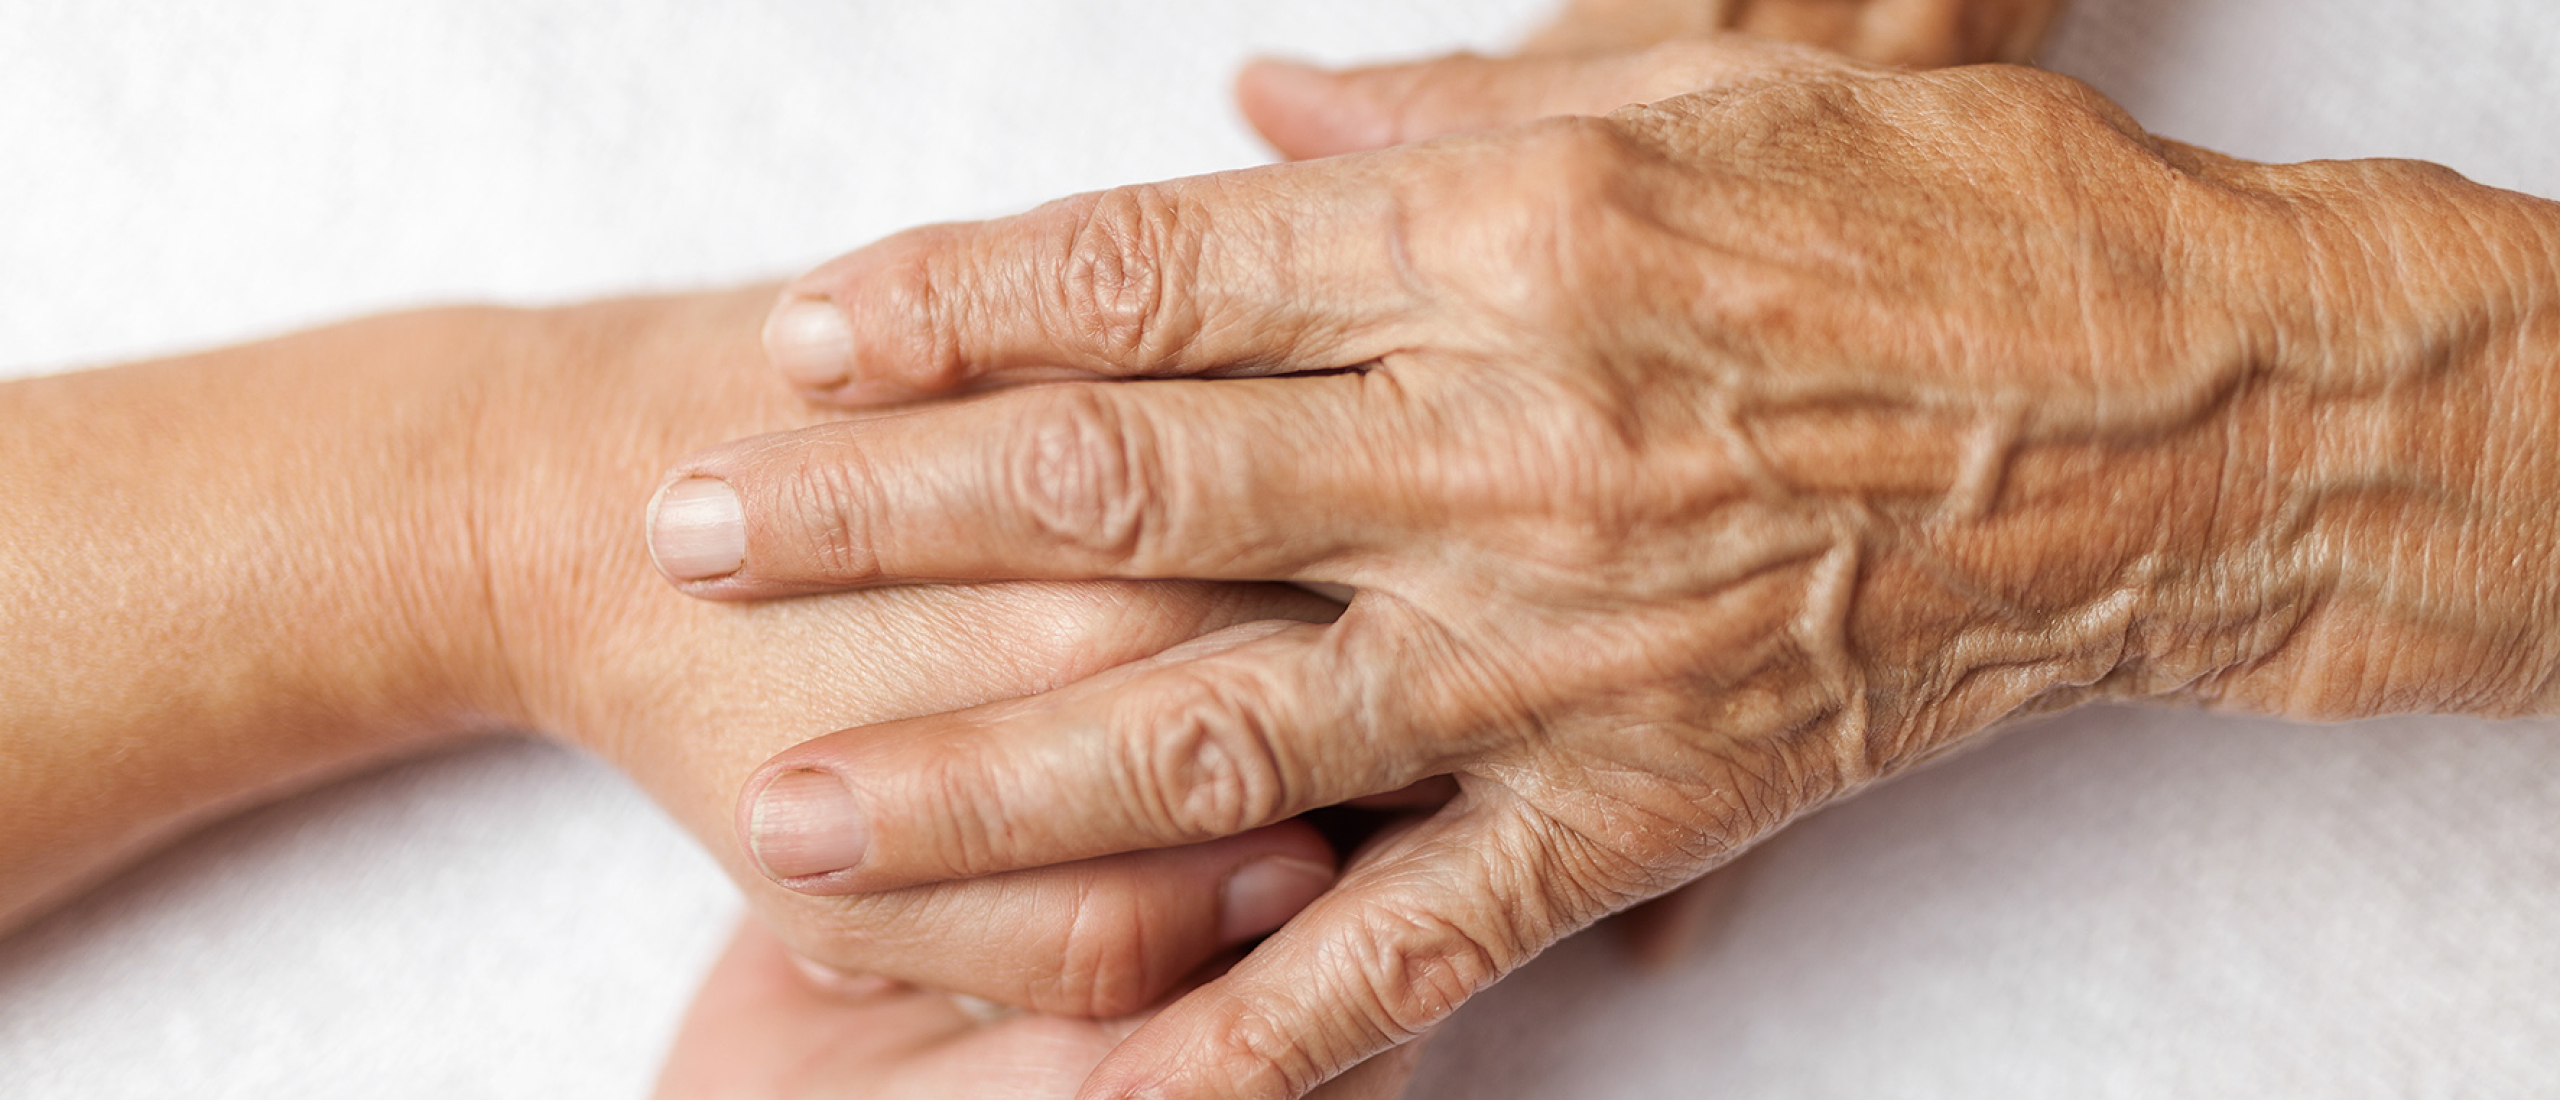 Twentse partners slaan handen ineen voor kwetsbare oudere